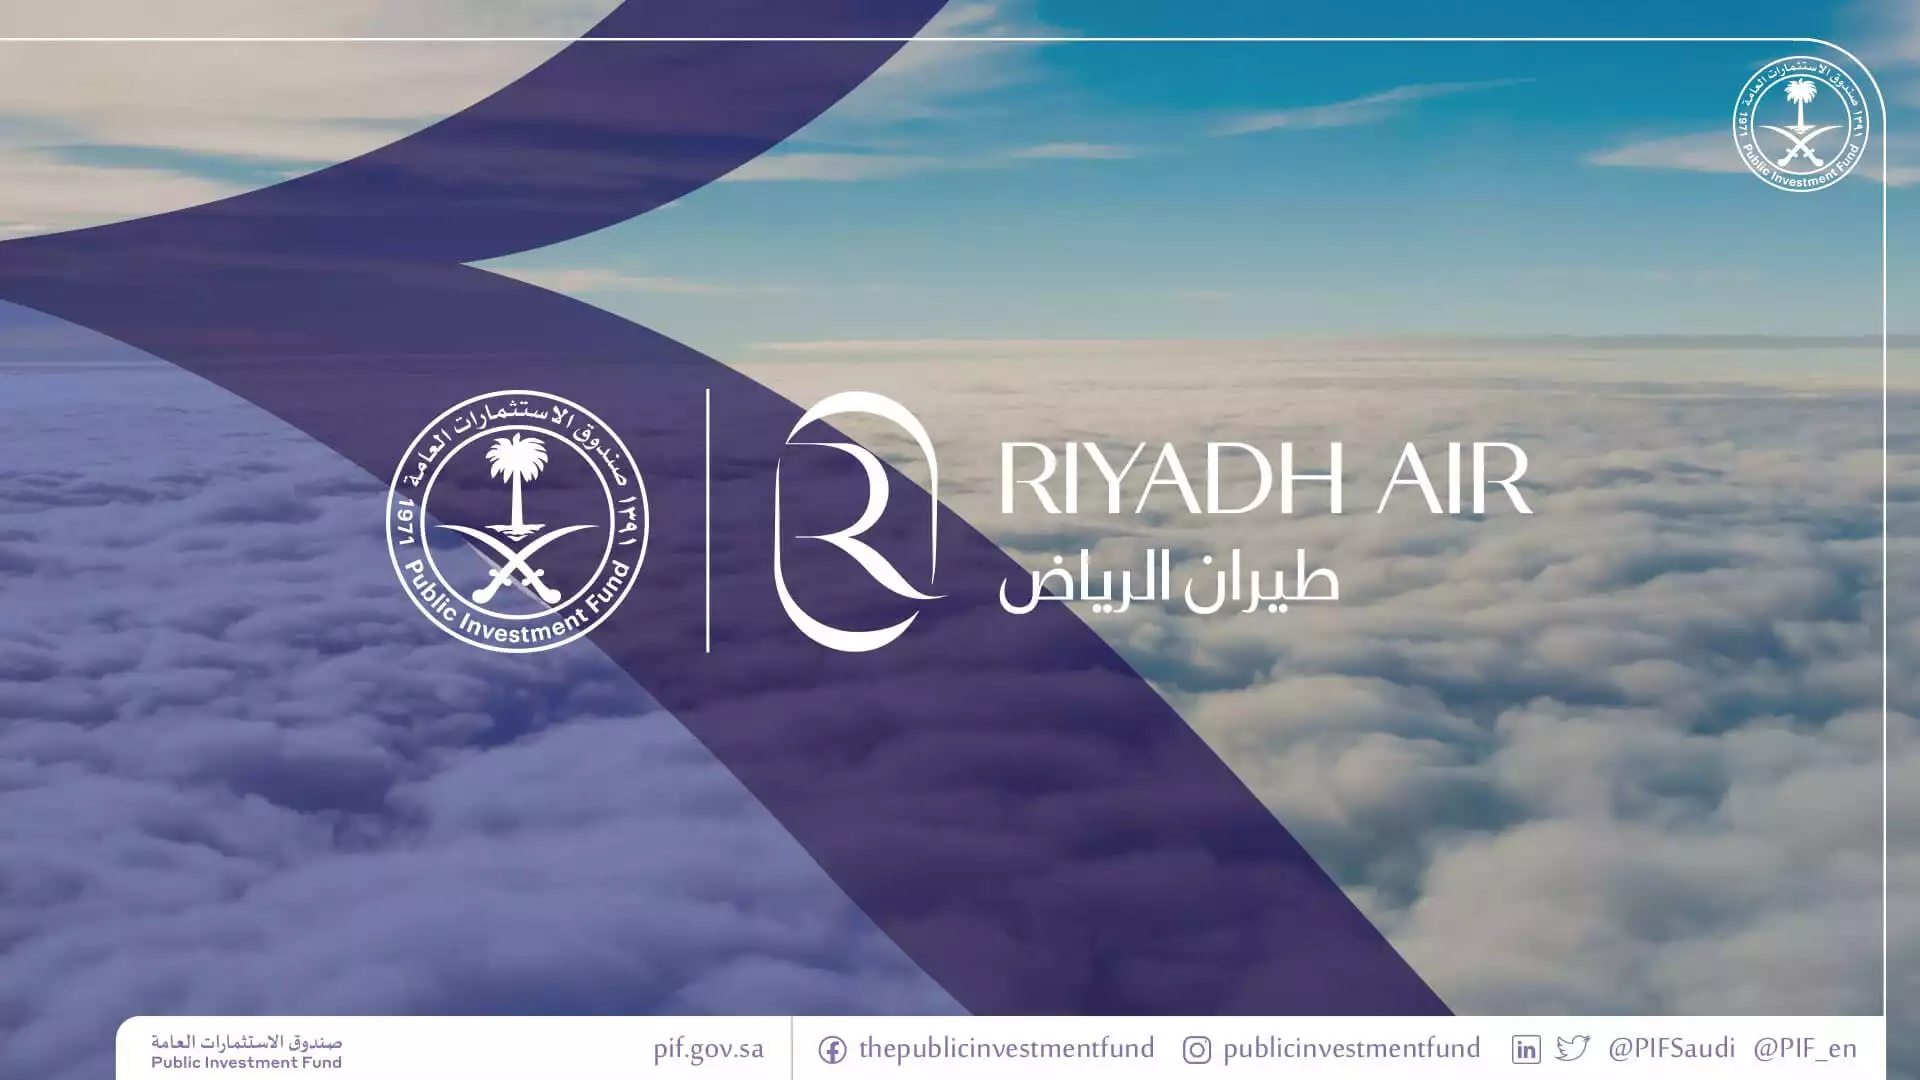 Compagnie aérienne : Riyadh Air est lancée avec des moyens colossaux